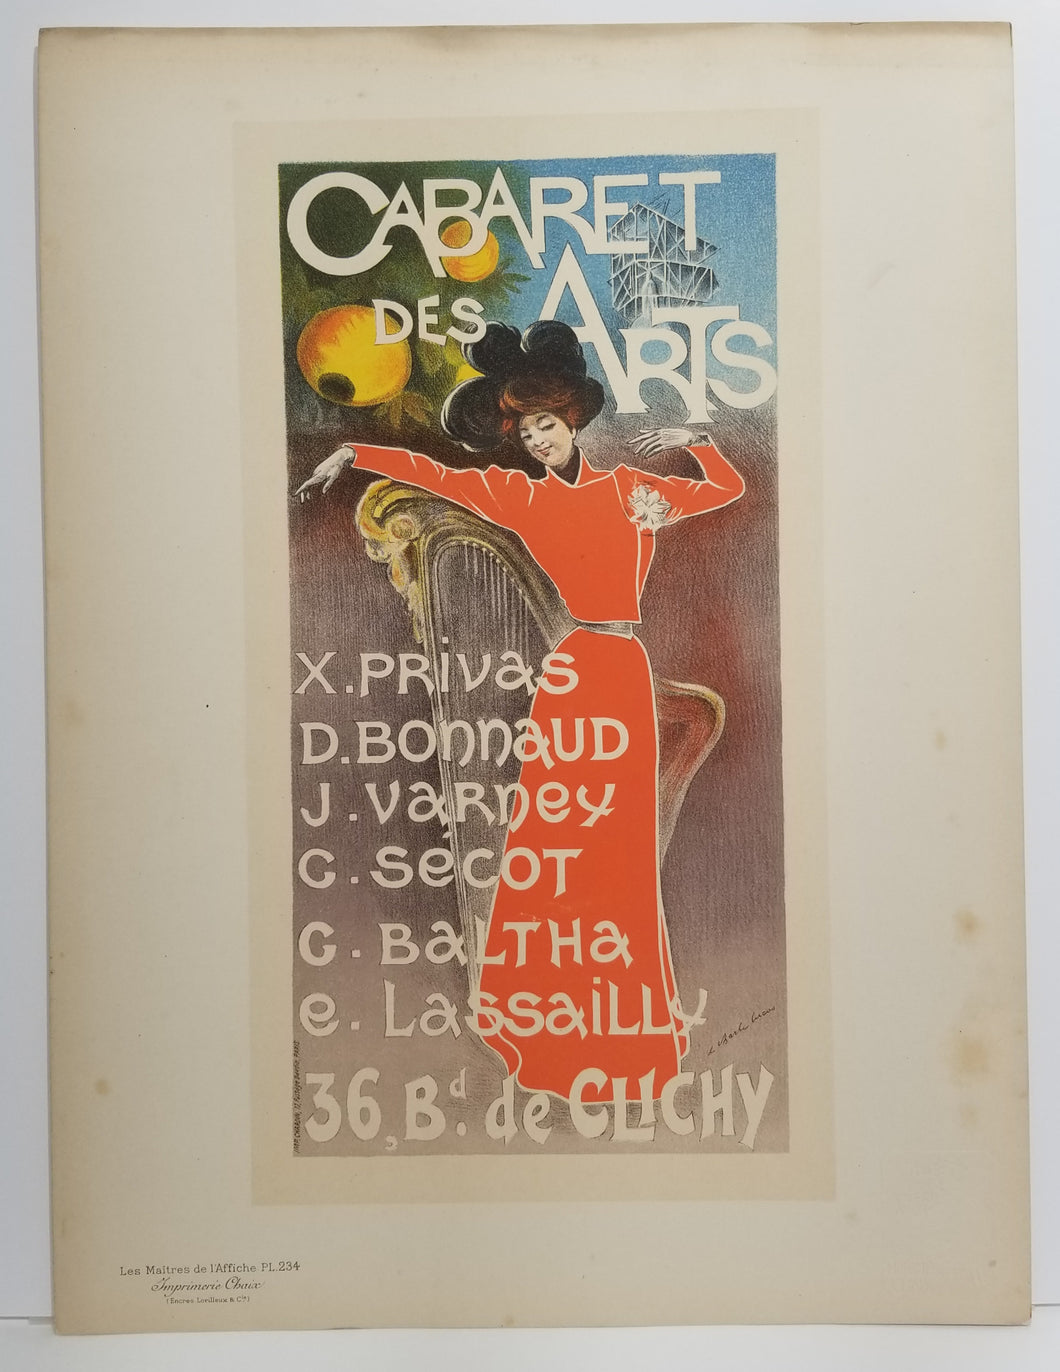 Cabaret des Arts. 1900.